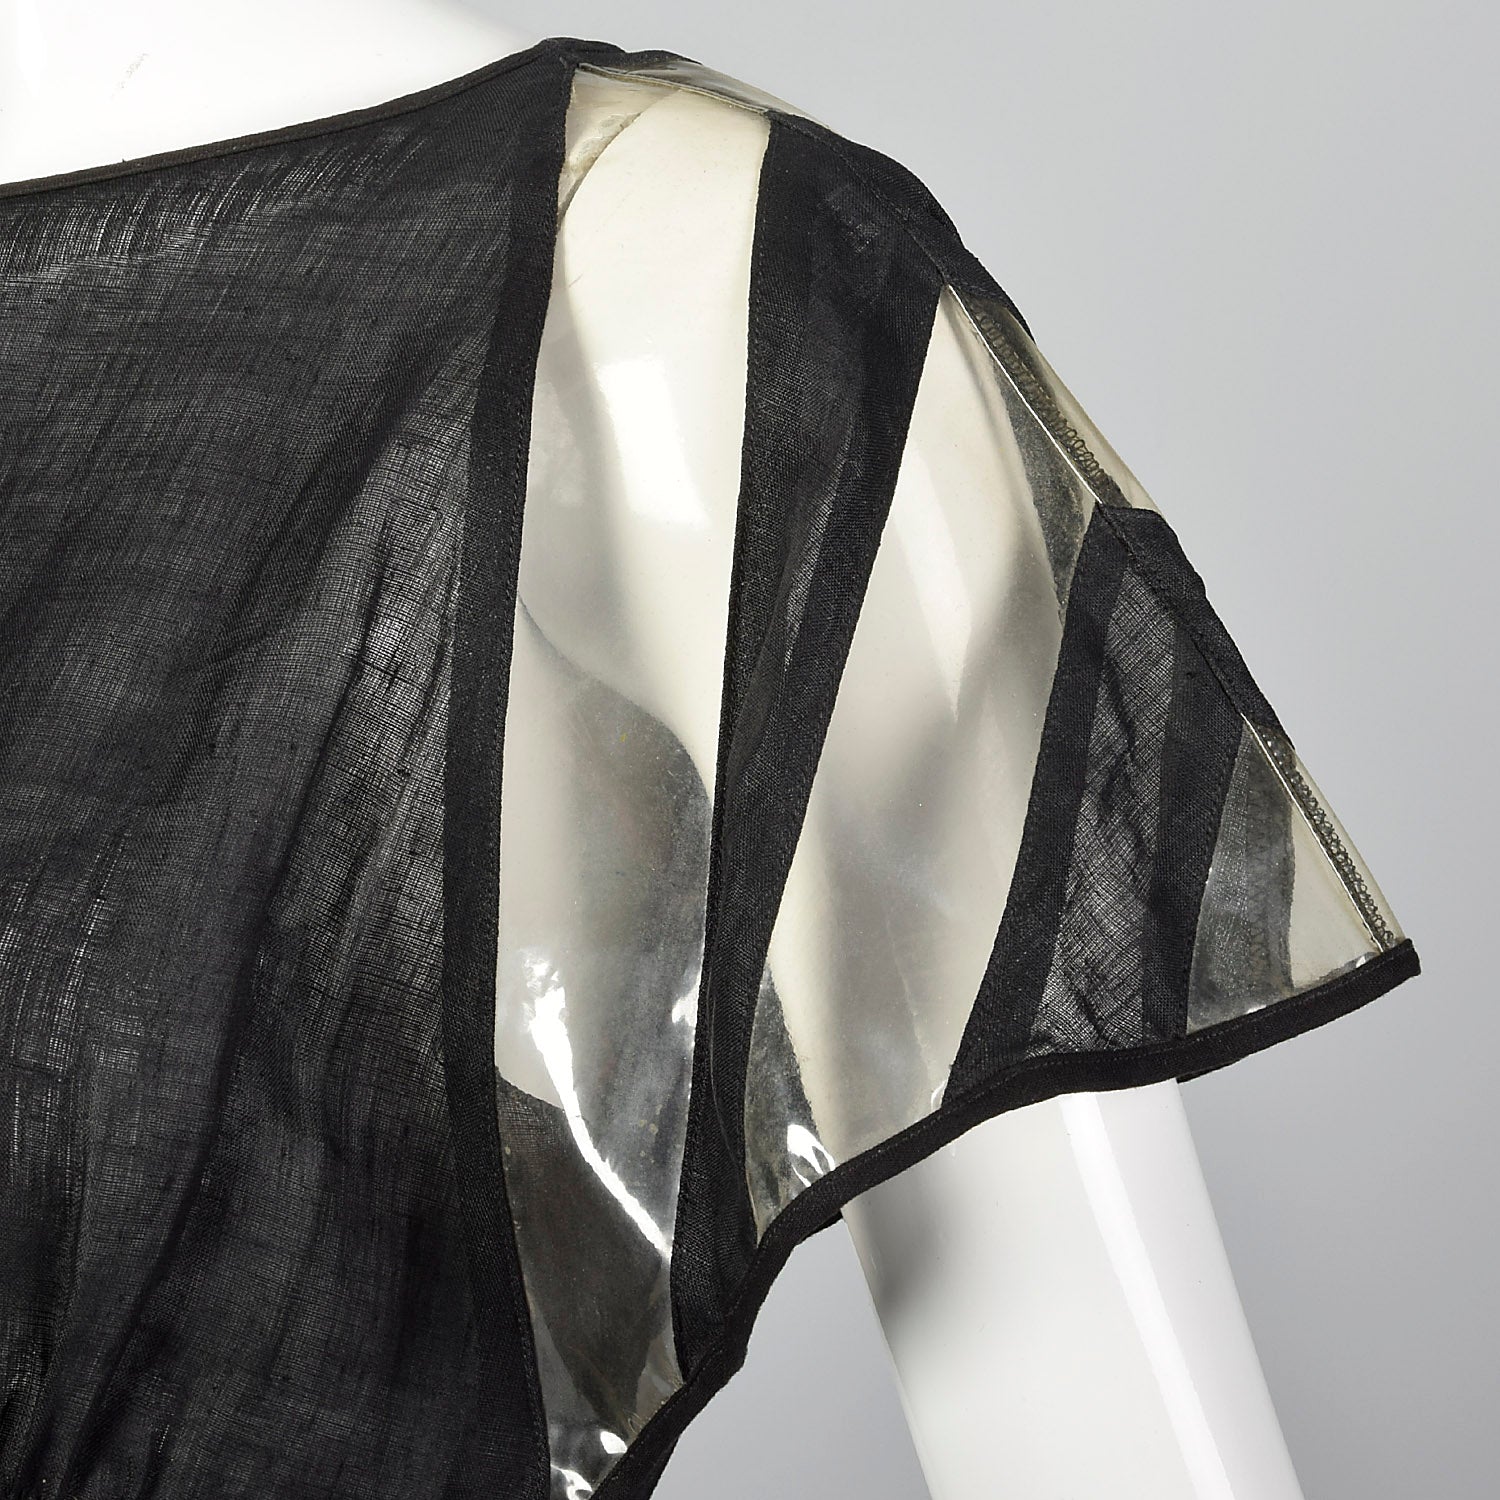 Fendi Linen Dress with Vinyl Sleeves & Split Skirt